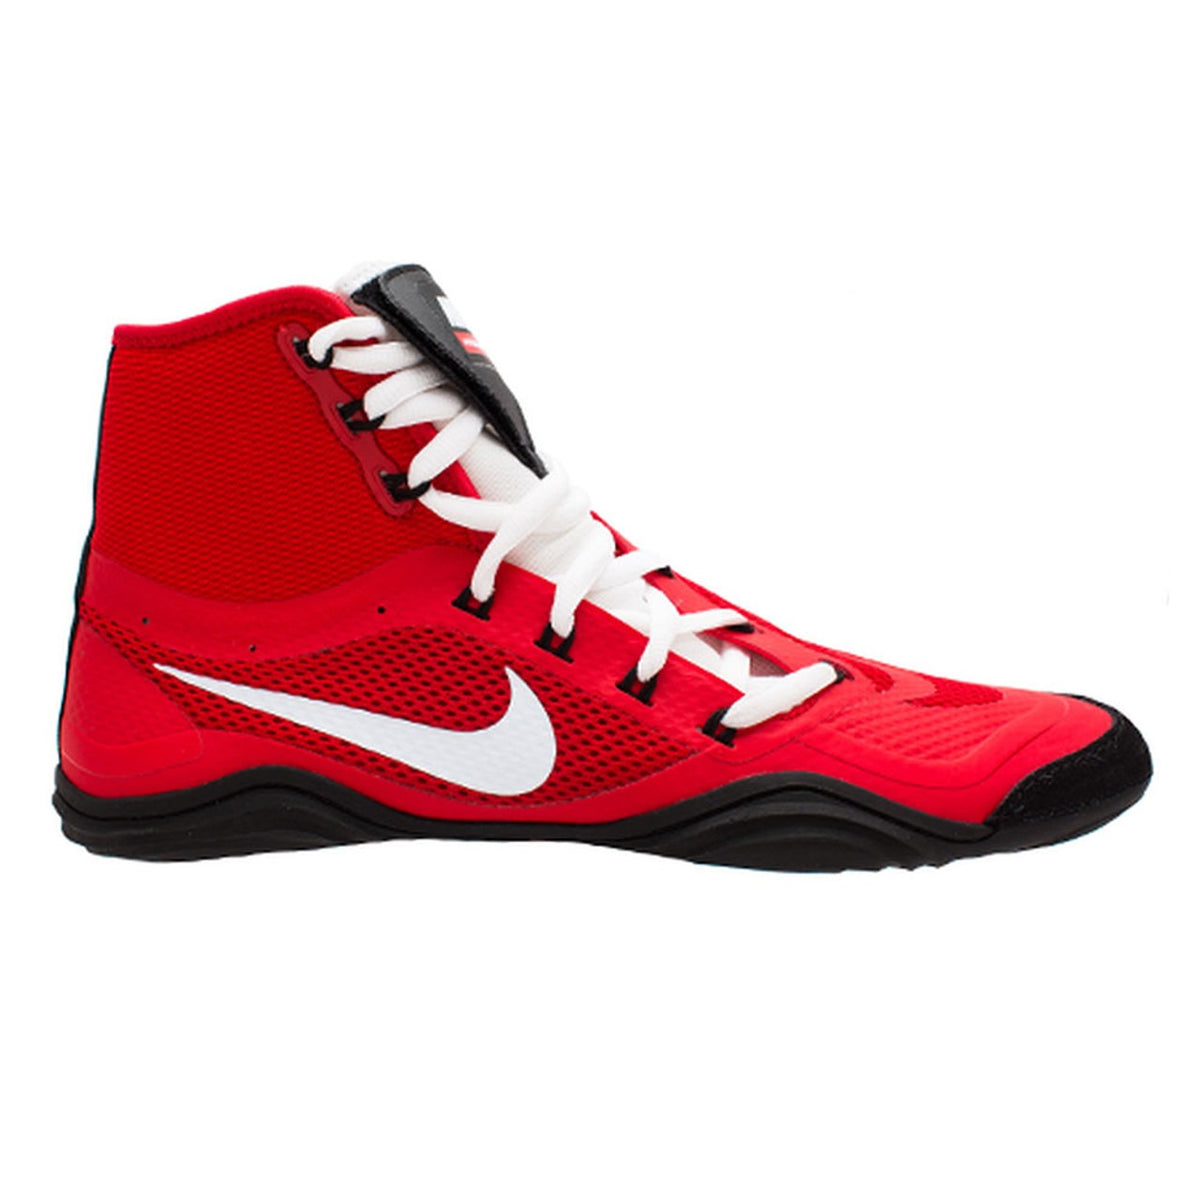 Buty zapaśnicze Nike HYPERSWEEP LE. Profesjonalne buty zapaśnicze dla wszystkich ambitnych zapaśników. Dzięki najbardziej zaawansowanej technologii buty Nike Hypersweep zapewniają dużą przyczepność na macie zapaśniczej. Na treningach i zawodach. Tutaj w kolorze czerwonym.